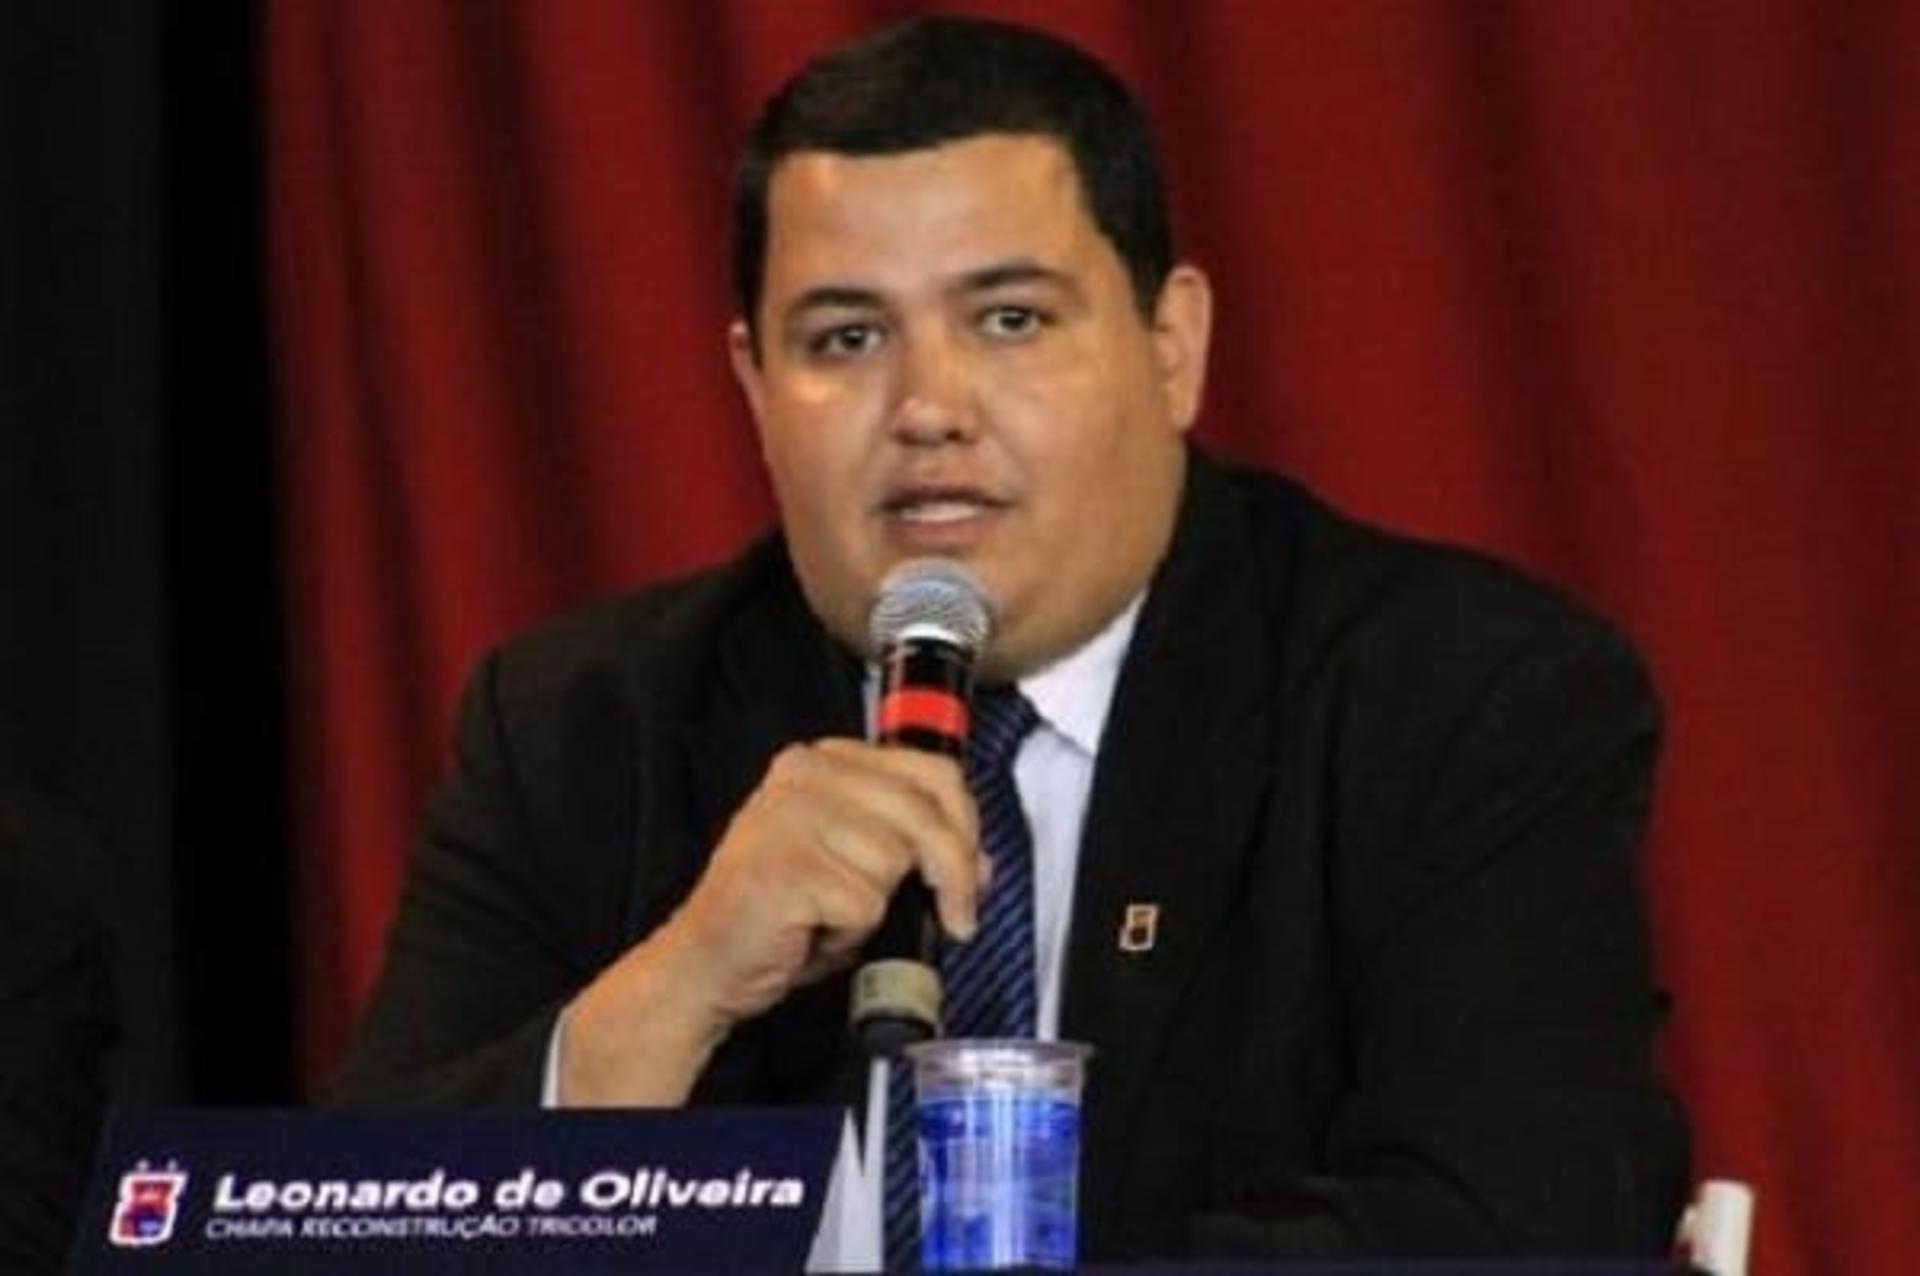 Leonardo Oliveira, presidente do Paraná Clube